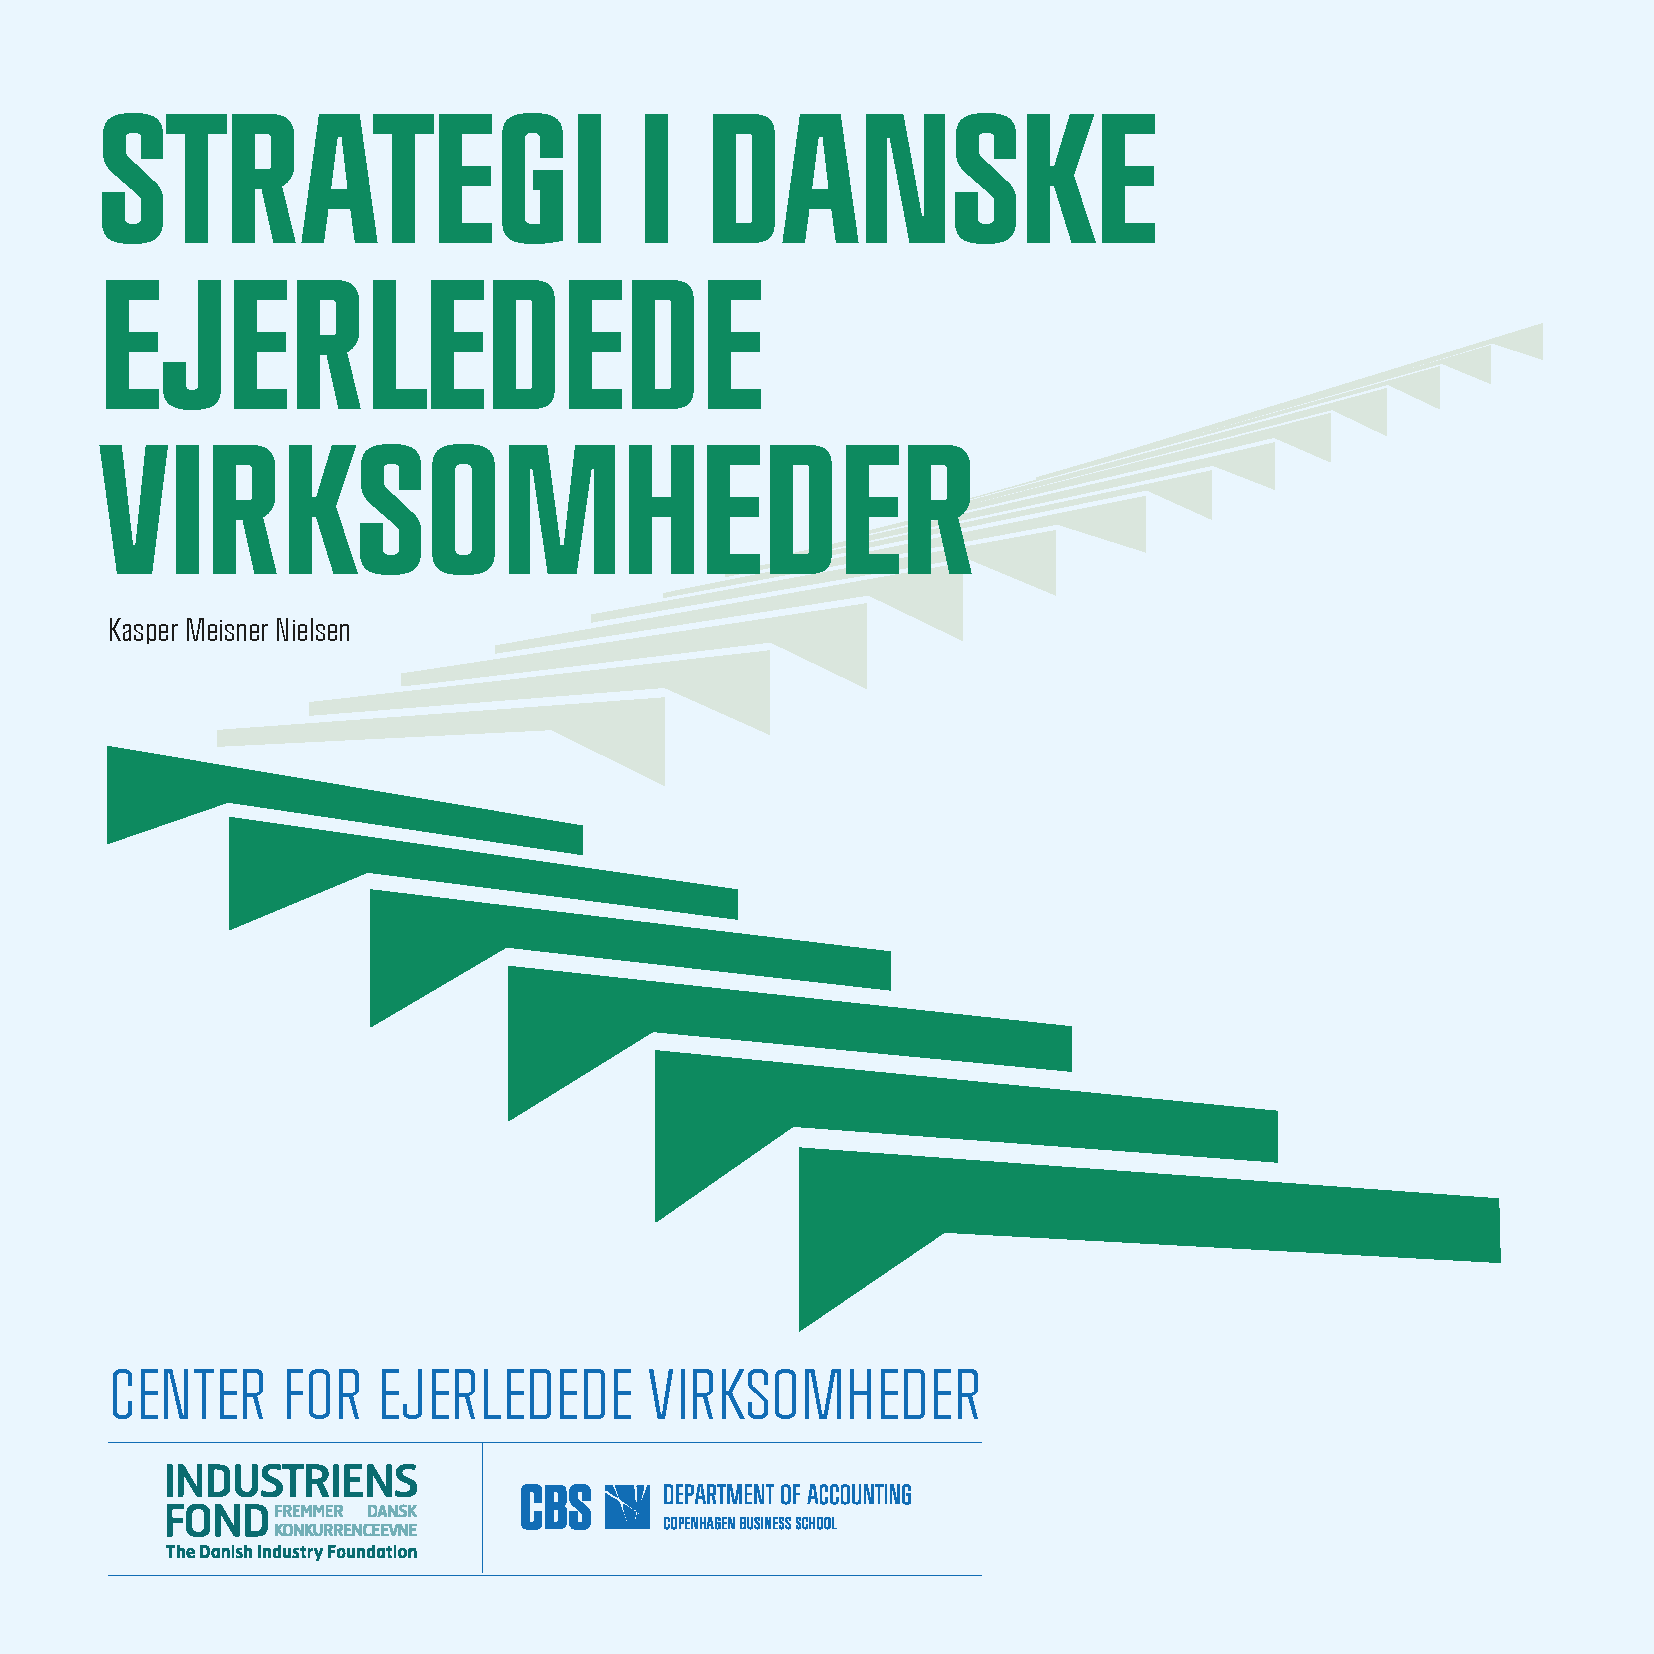 Billede af forsiden til rapporten: Strategi i danske ejerledede virksomheder